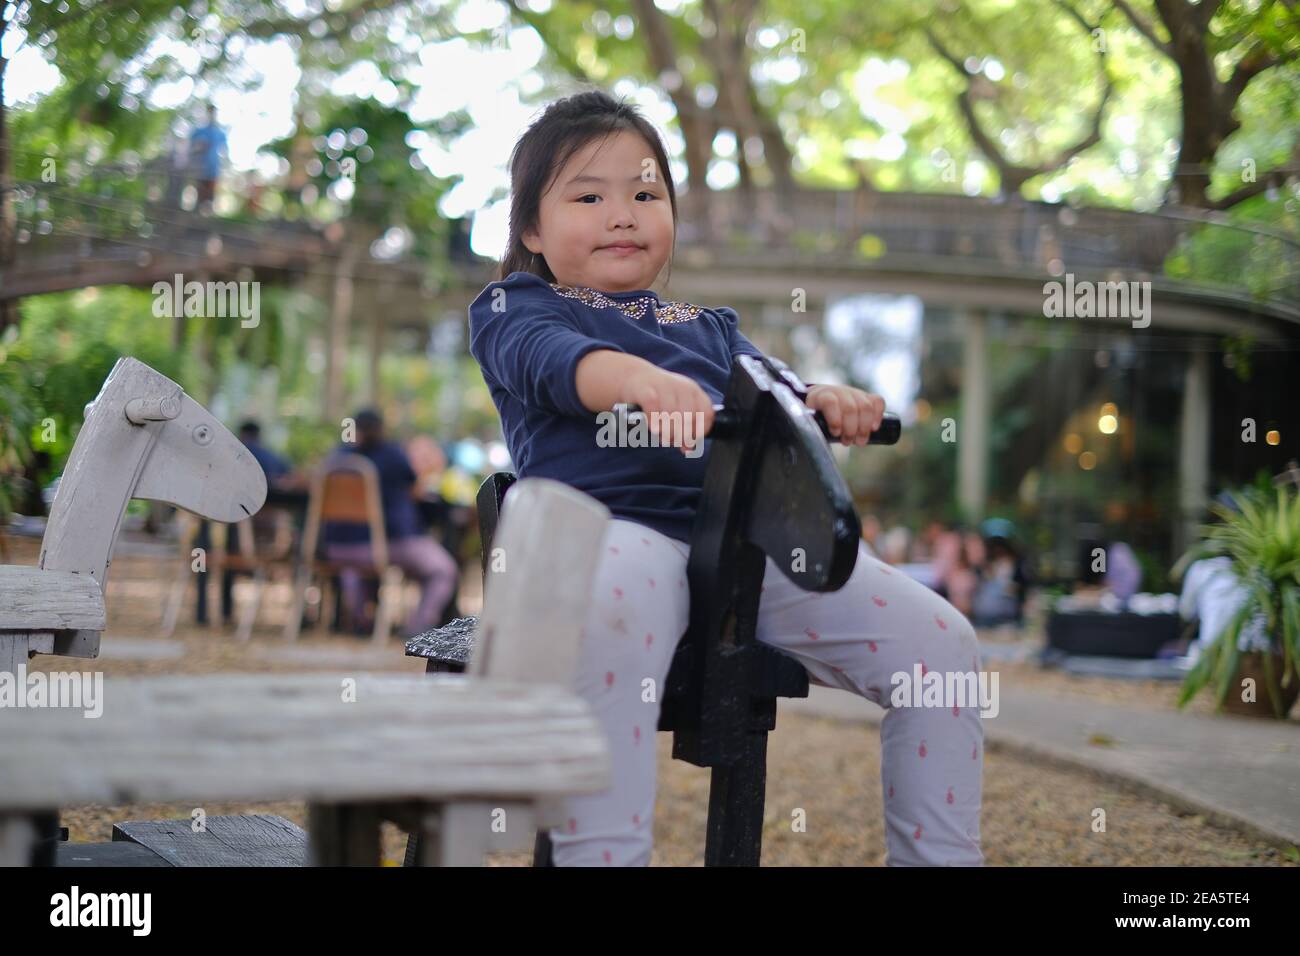 Une jeune fille asiatique mignonne est à cheval rond-point en bois, souriant et s'amuser dans un parc. Banque D'Images